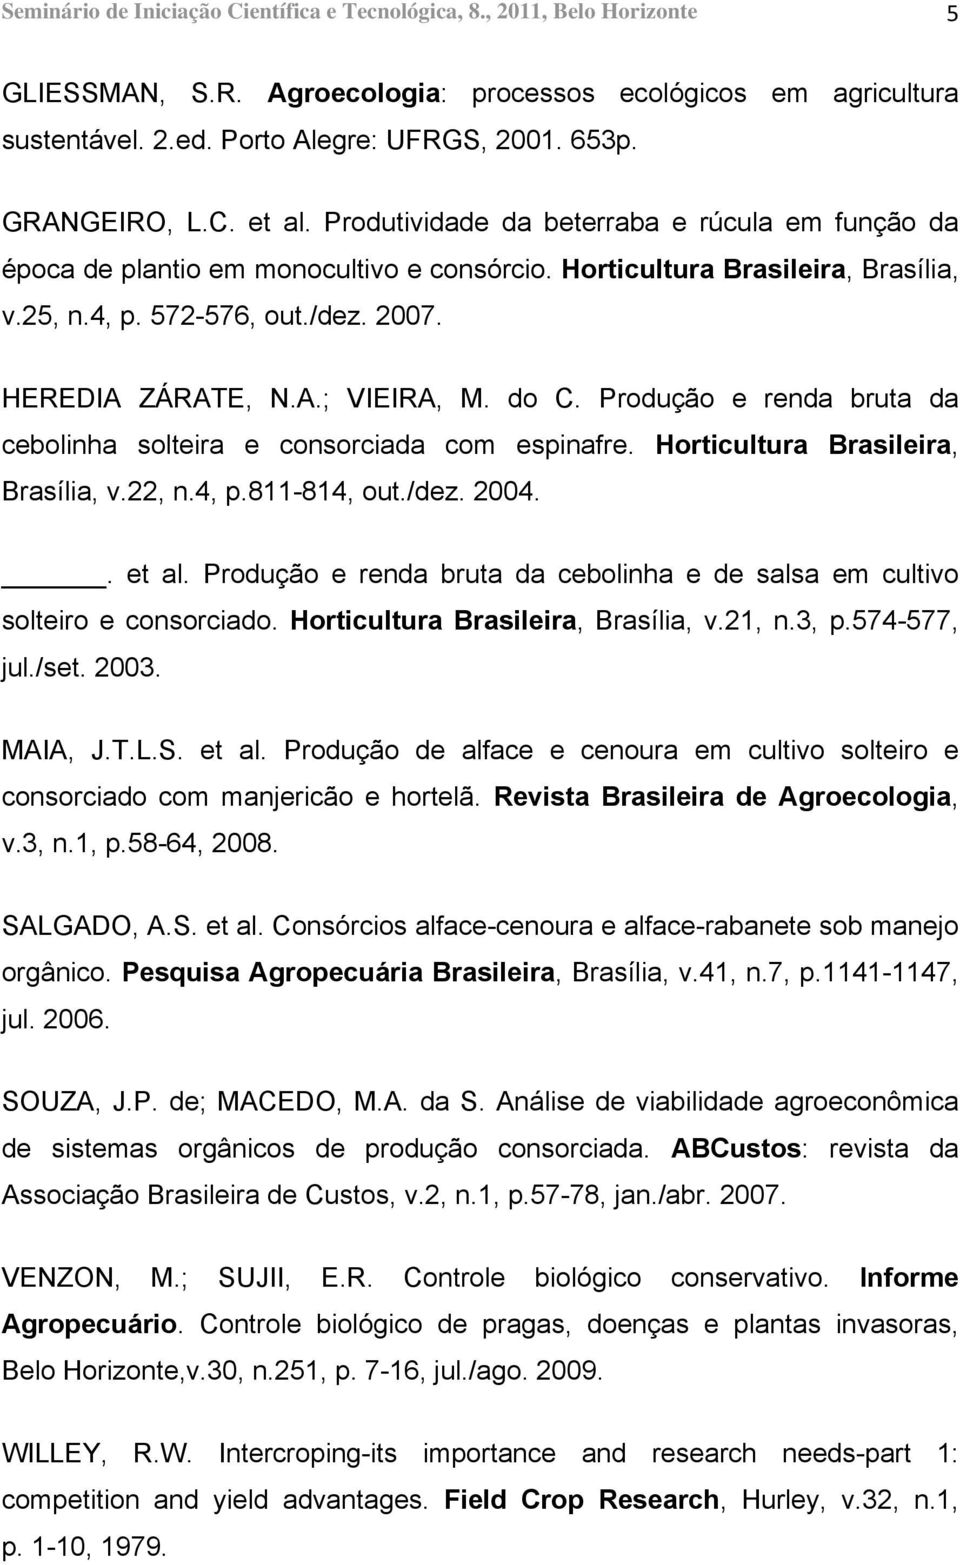 HEREDIA ZÁRATE, N.A.; VIEIRA, M. do C. Produção e renda bruta da cebolinha solteira e consorciada com espinafre. Horticultura Brasileira, Brasília, v.22, n.4, p.811-814, out./dez. 2004.. et al.